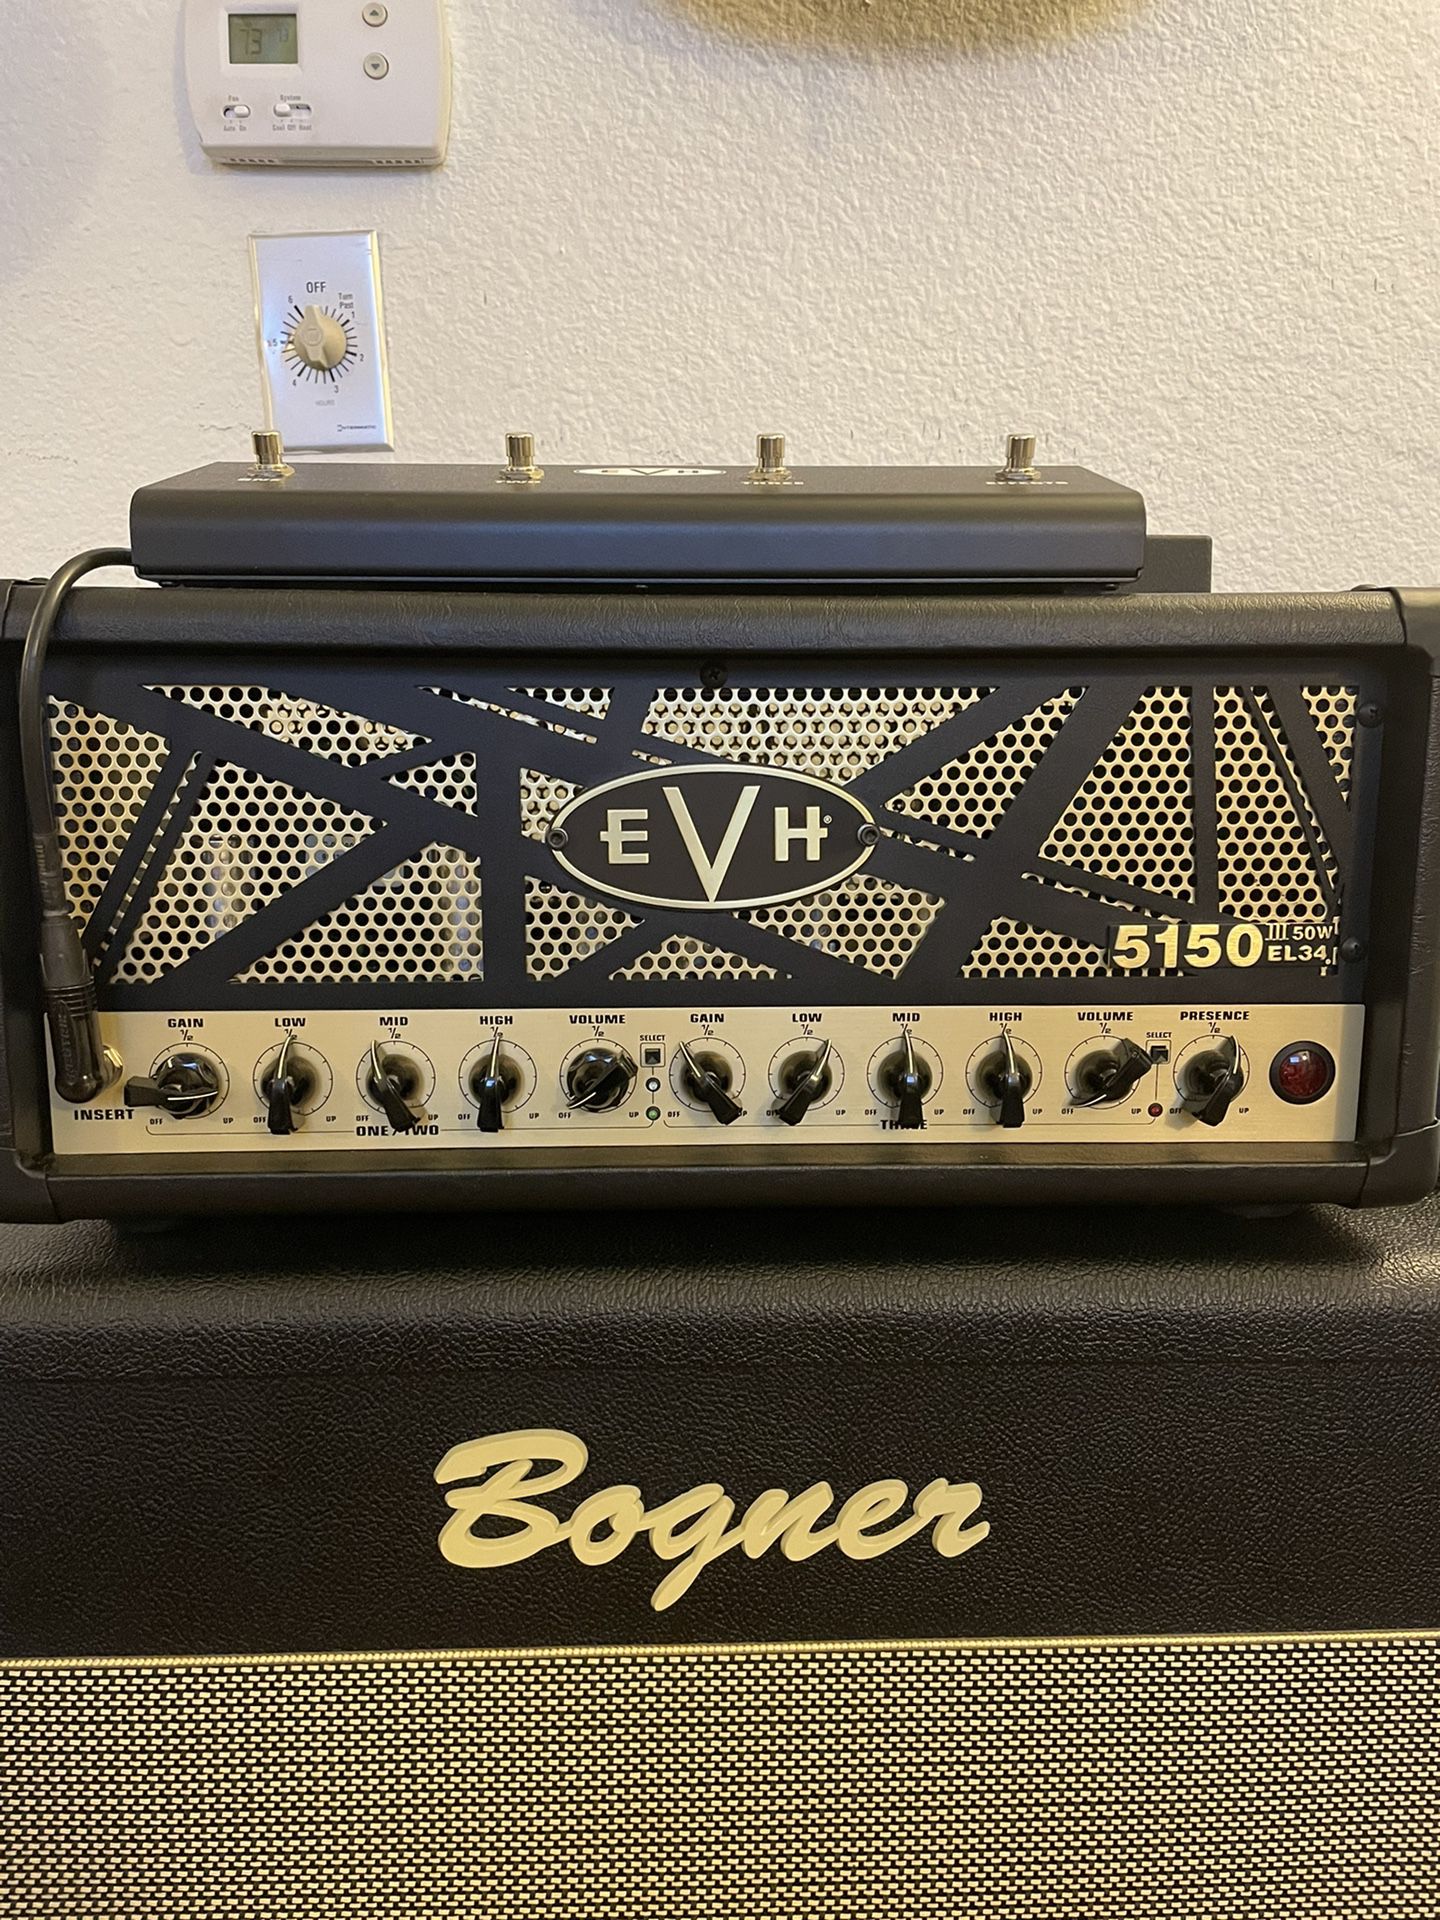 EVH 5150 el34 Version 50w